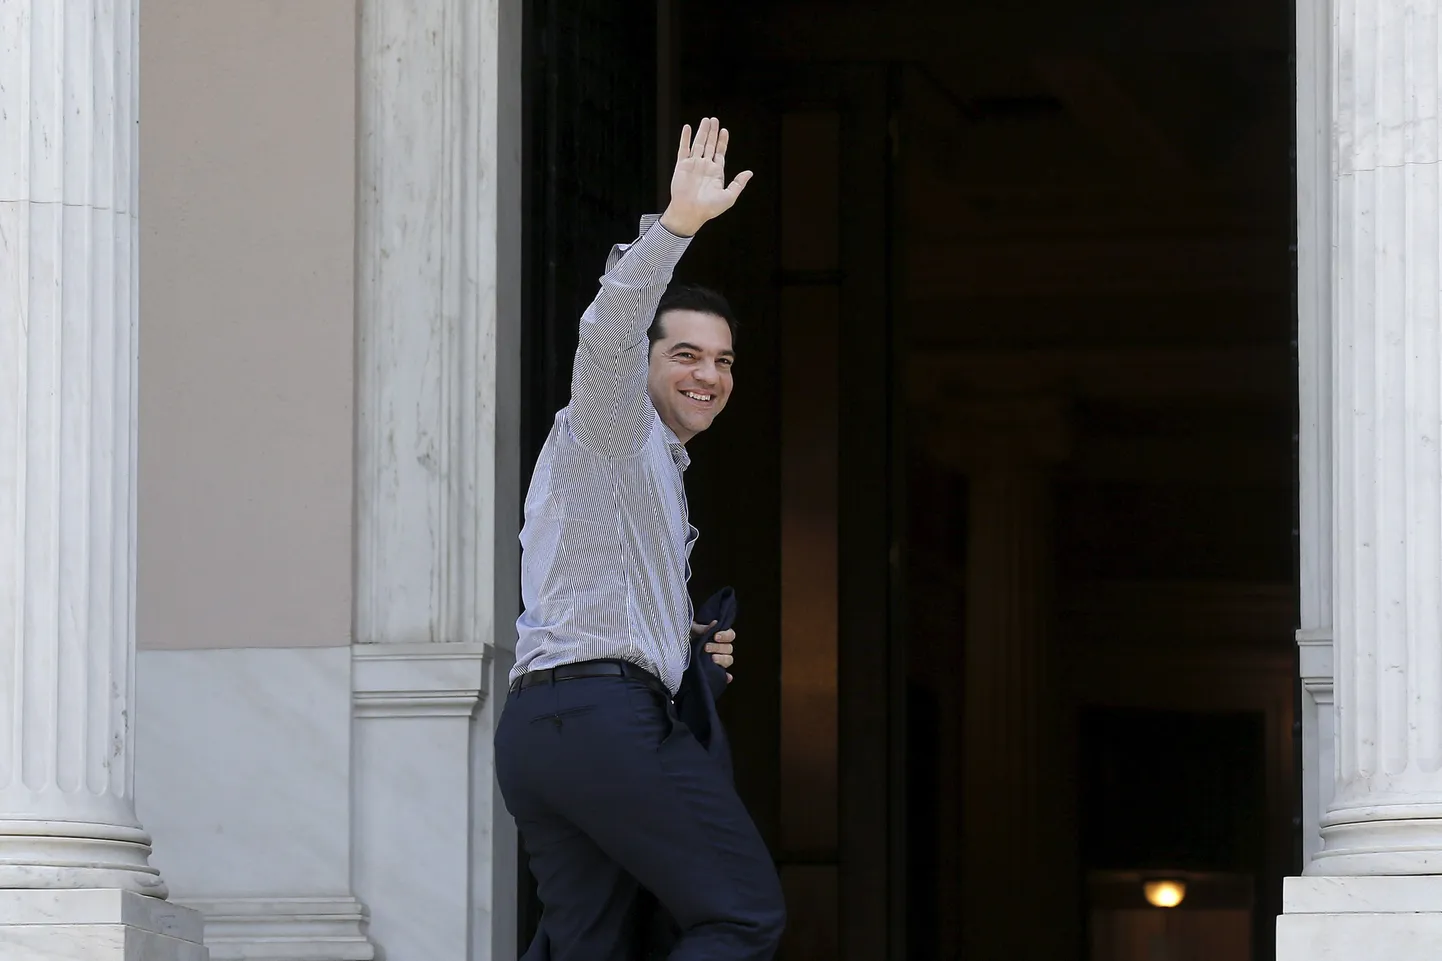 Kreeka peaminister Alexis Tsipras tänasele Ateenas toimuvale kohtumisele saabumas.